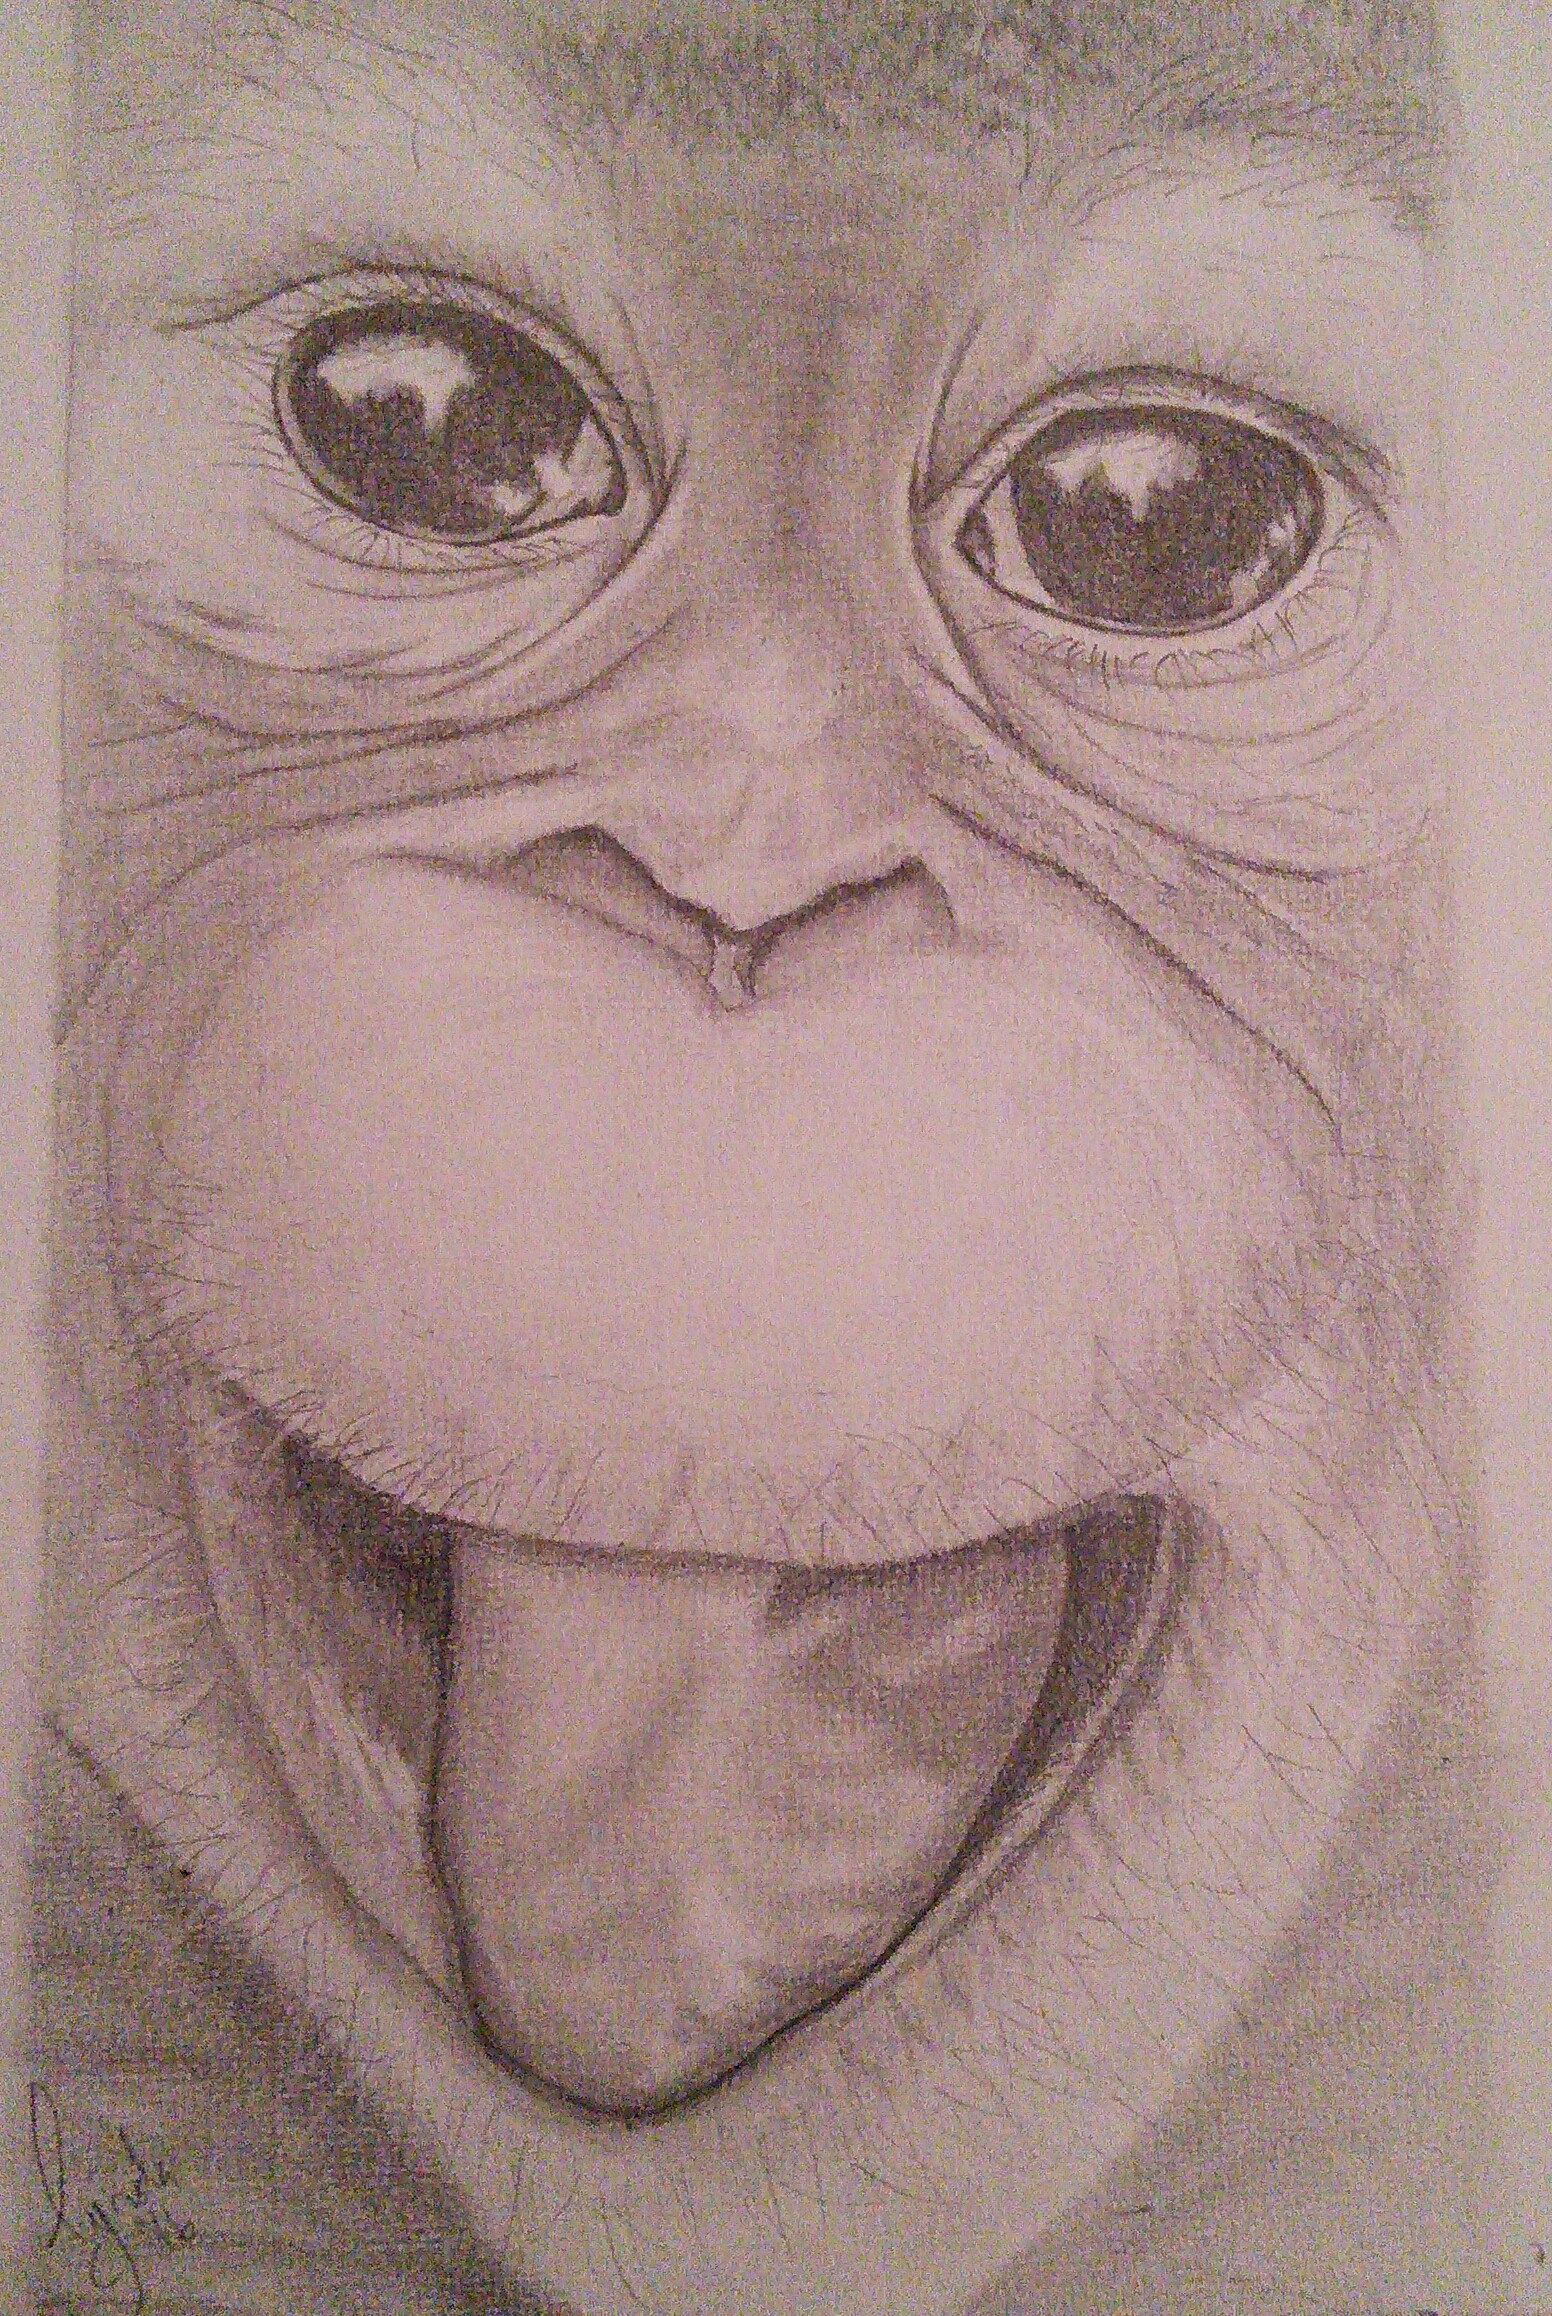 Orangutan Drawing